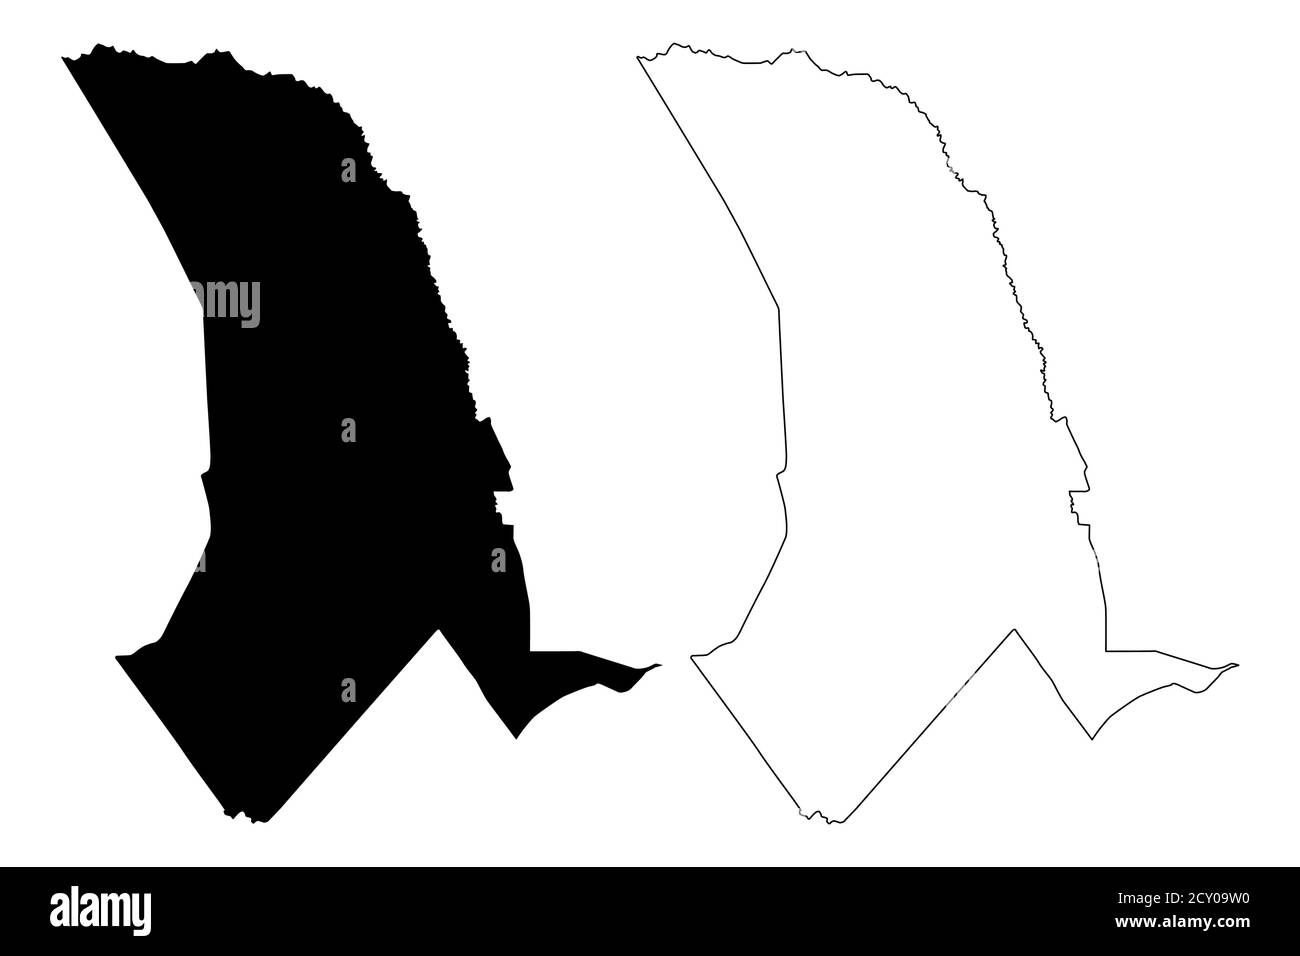 Tana River County (Republik Kenia, Küstenprovinz) Karte Vektorgrafik, Skizze Tana River Karte Stock Vektor